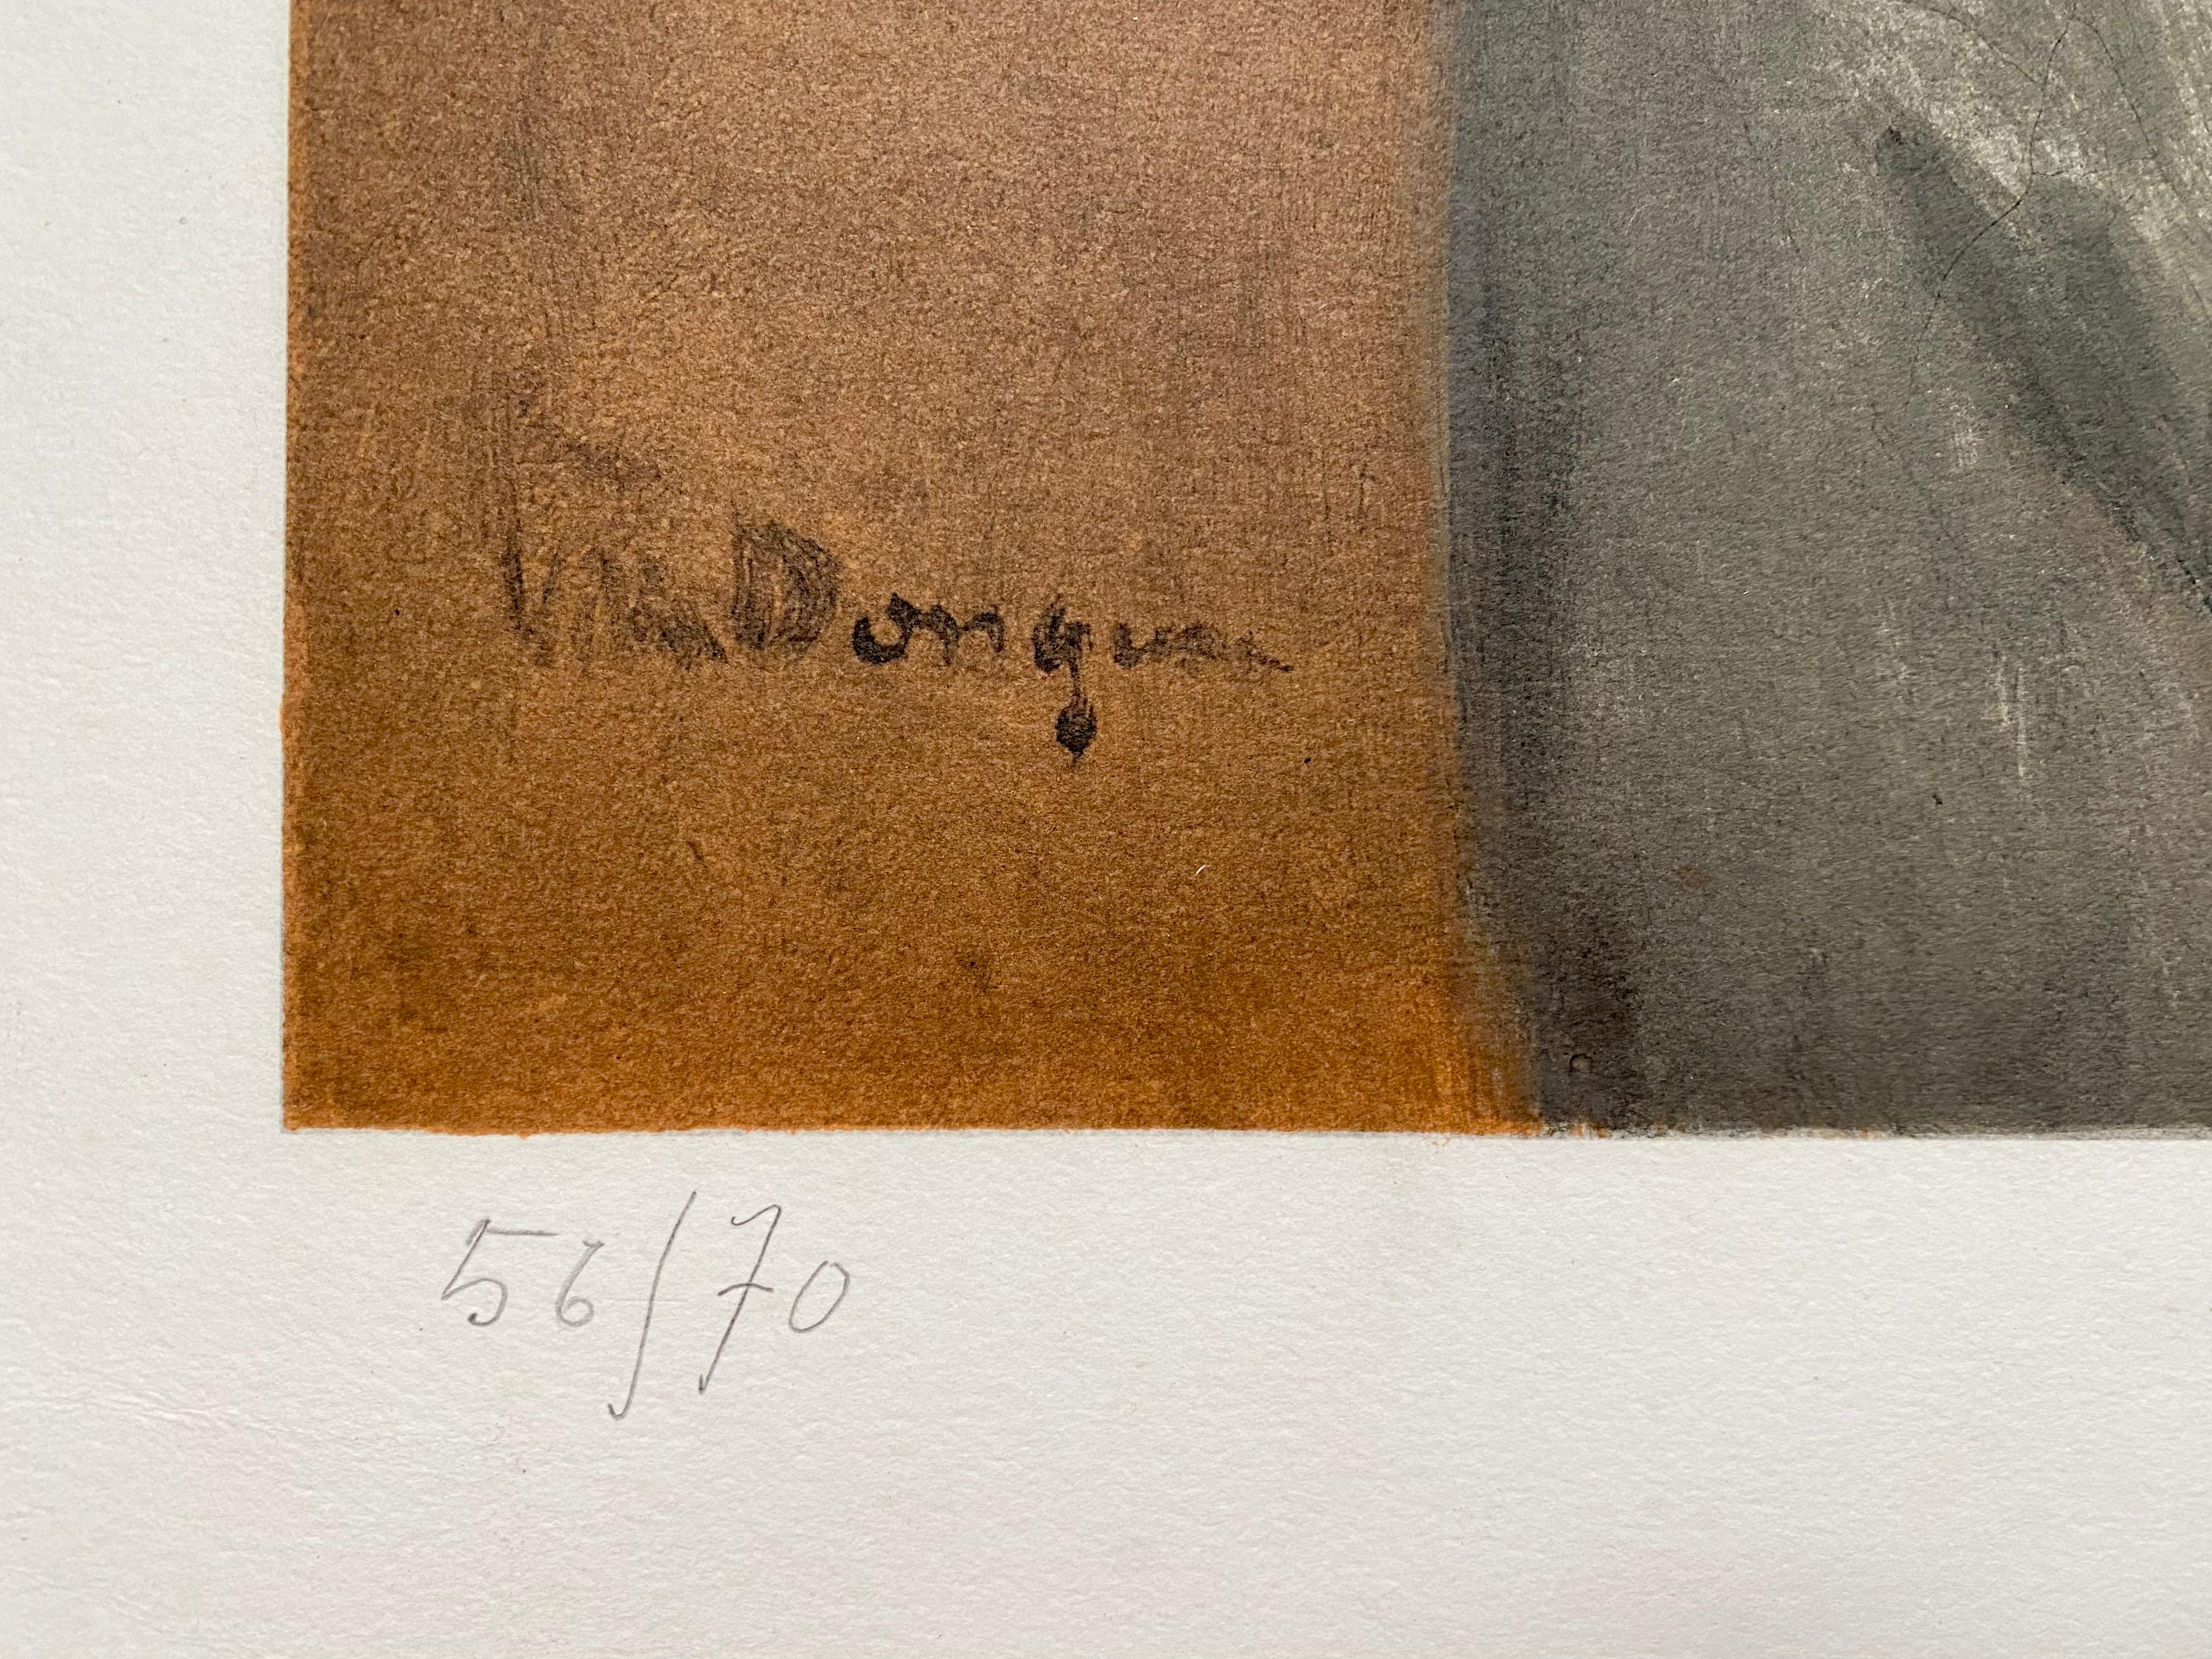 Kees van Dongen- Le Coquelicot
Lithographie sur papier Arches (avec filigrane Arches), 1960
Rare exemplaire signé de l'édition de 70 exemplaires.
Signé et numéroté (56/70) au crayon.
En très bon état avec des couleurs vives et profondes.
Taille du